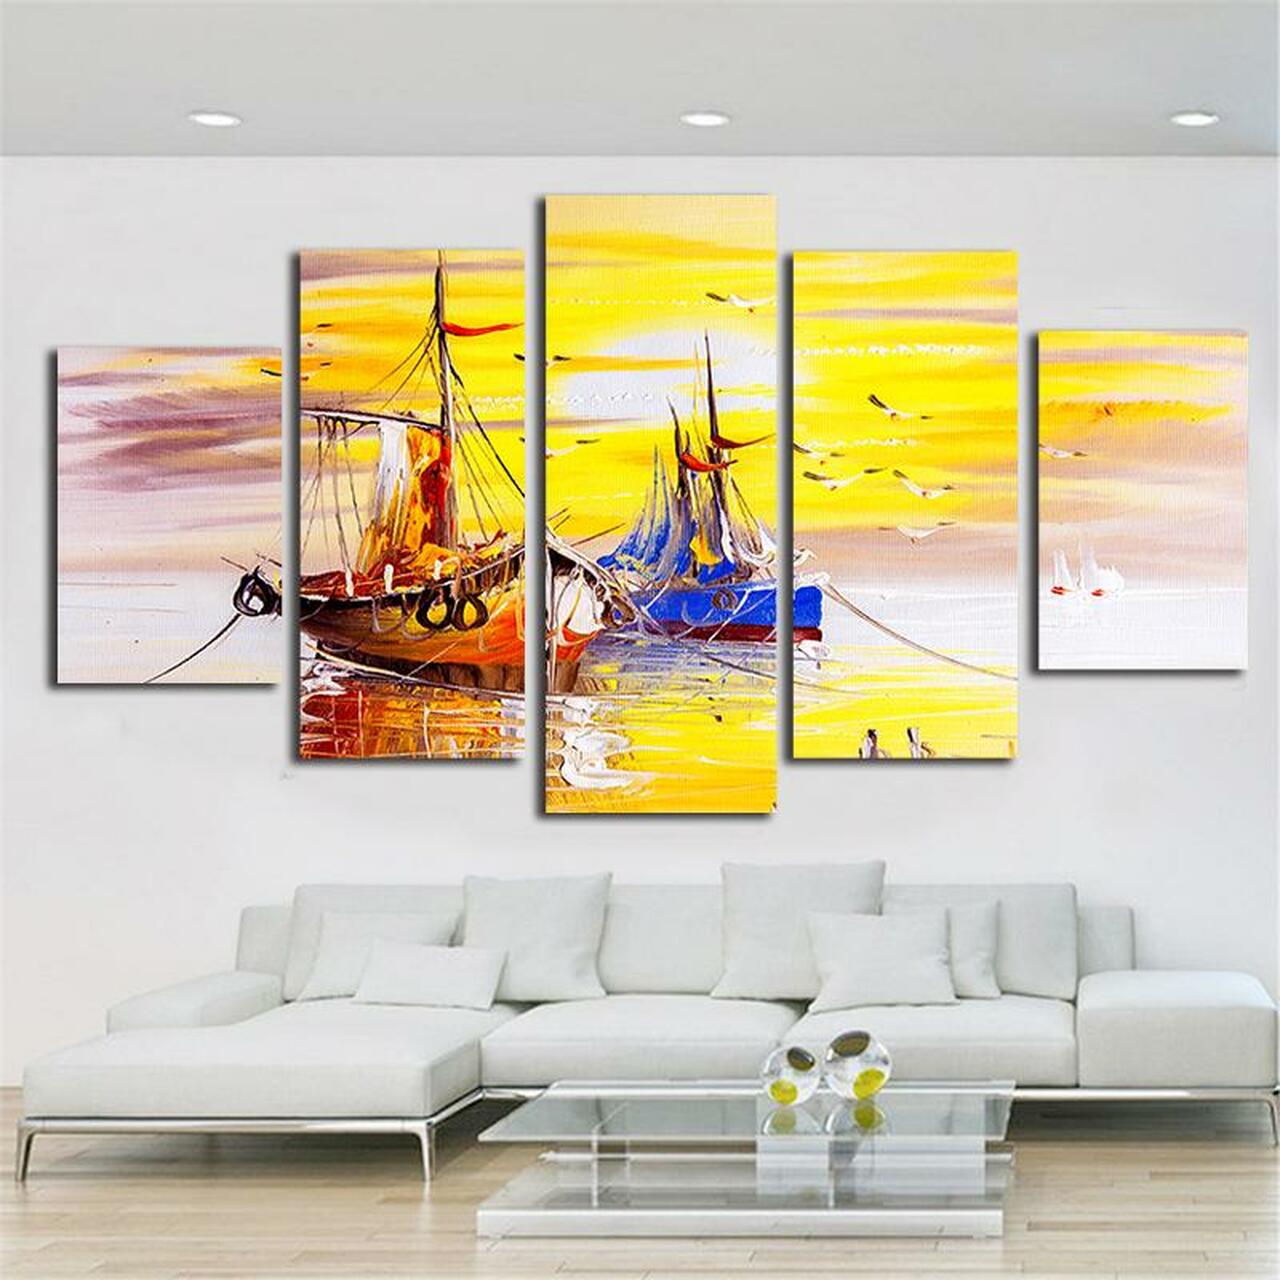 sailboat 5 pices peinture sur toile impression sur toile toile art pour la dcoration intrieurekhia5